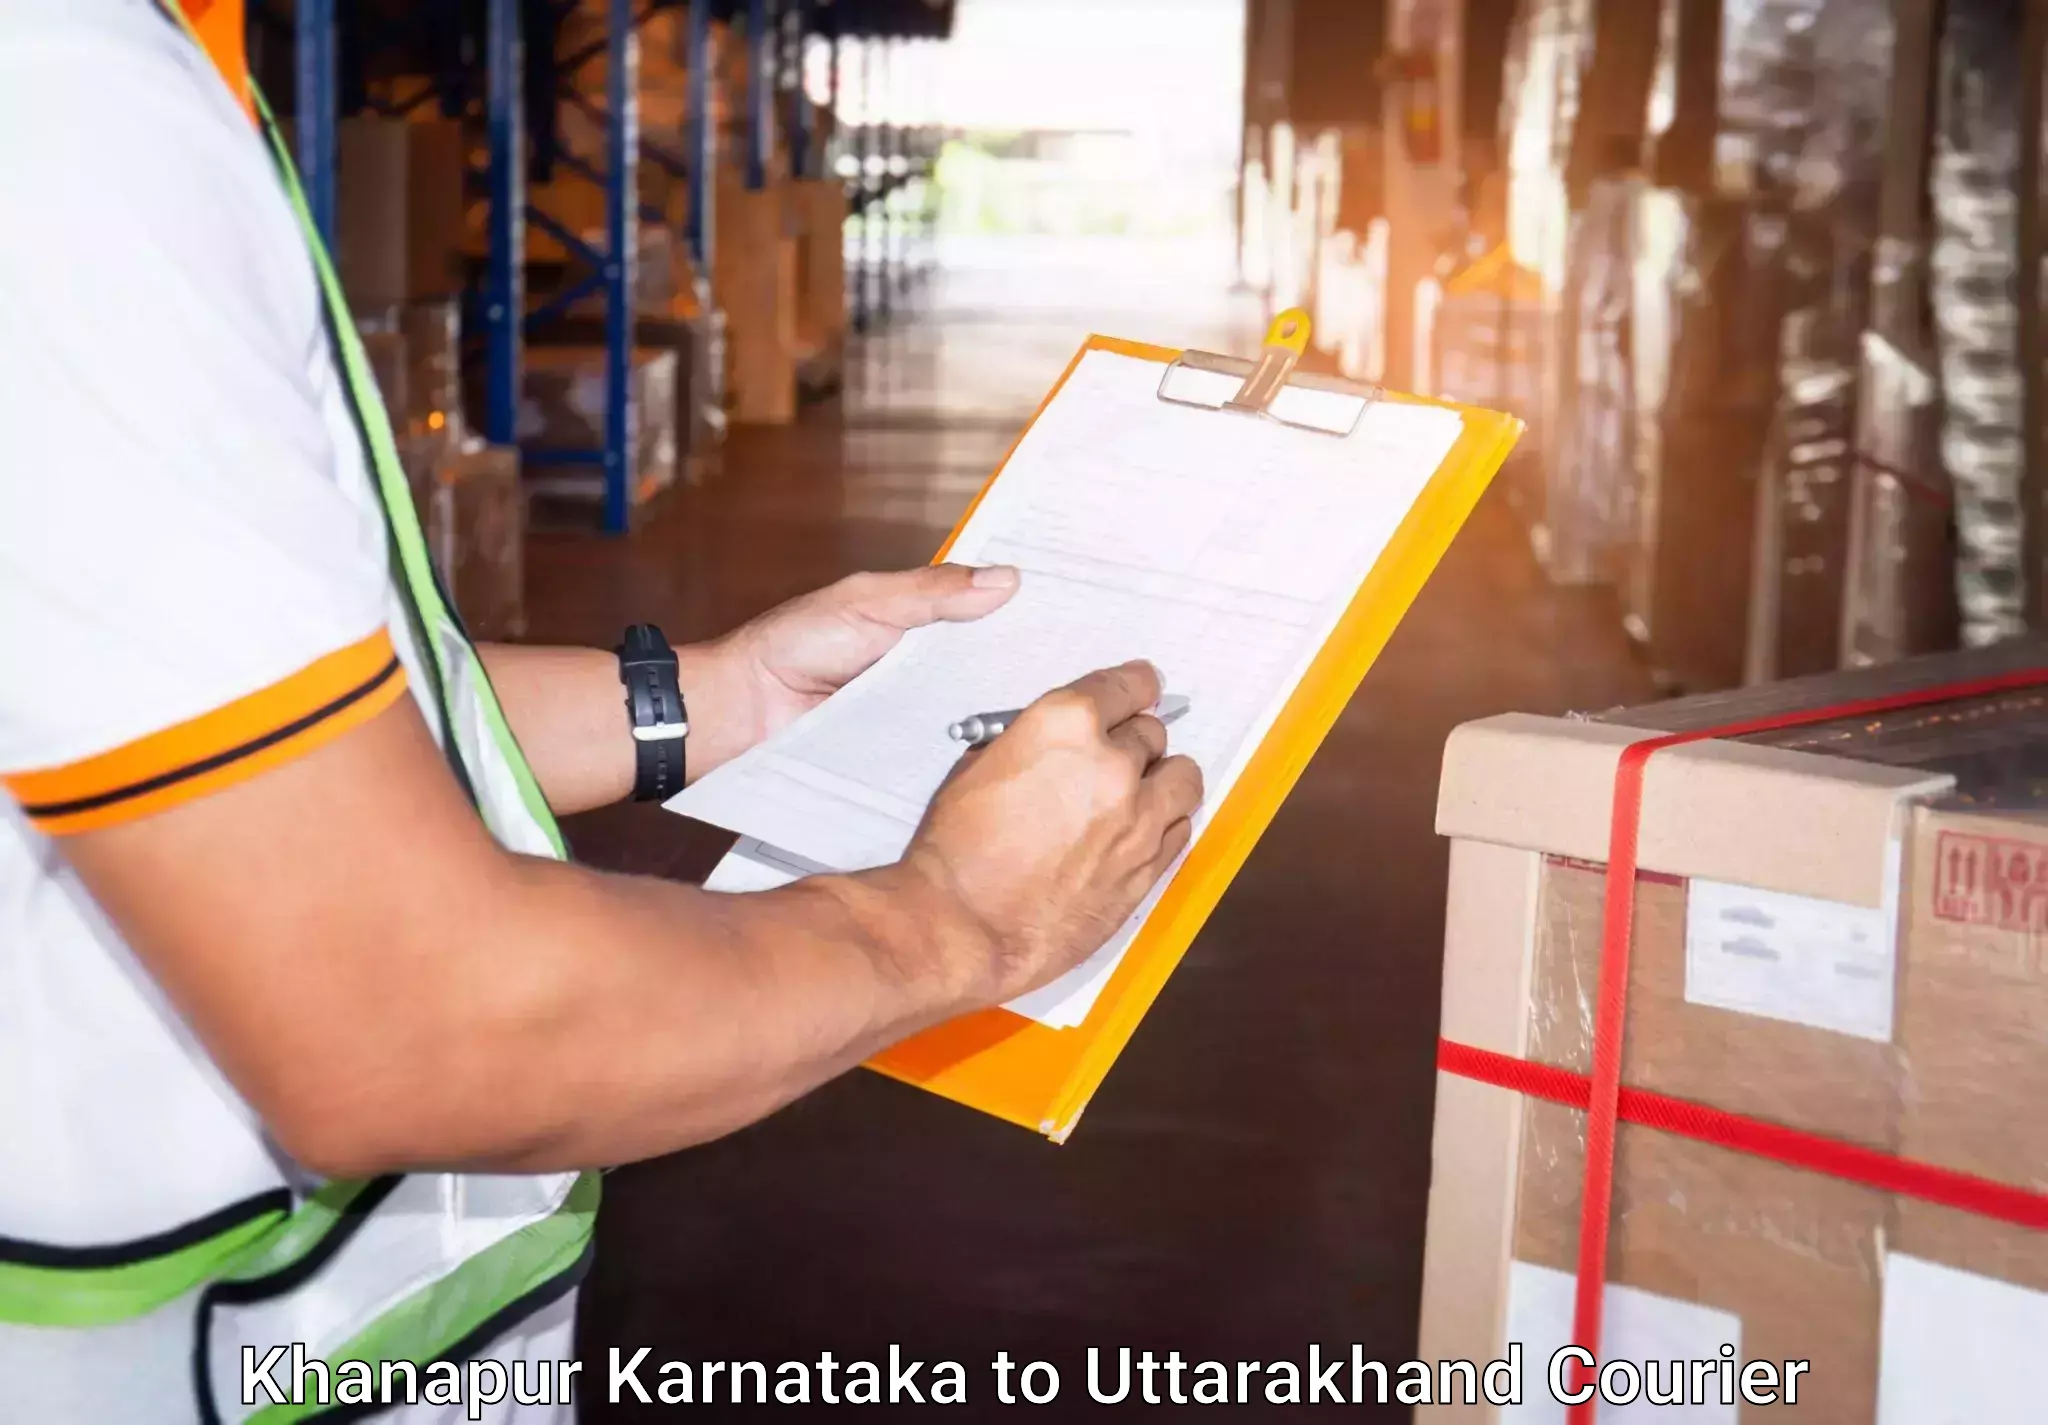 Baggage transport management Khanapur Karnataka to Lansdowne